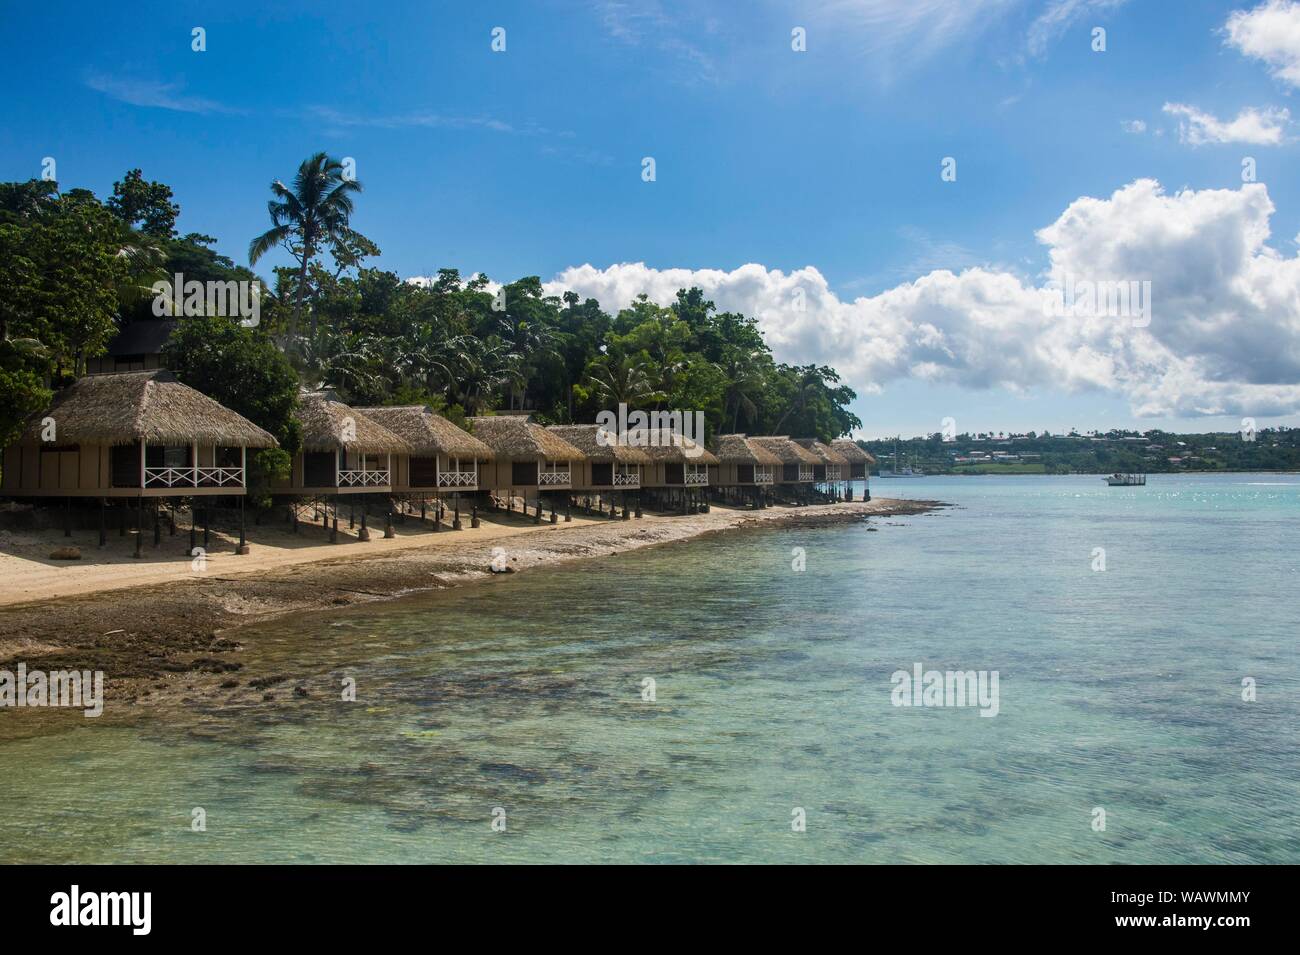 L'hébergement touristique, bungalows sur pilotis sur l'Iririki Island, Port Vila, Vanuatu Efate, Banque D'Images